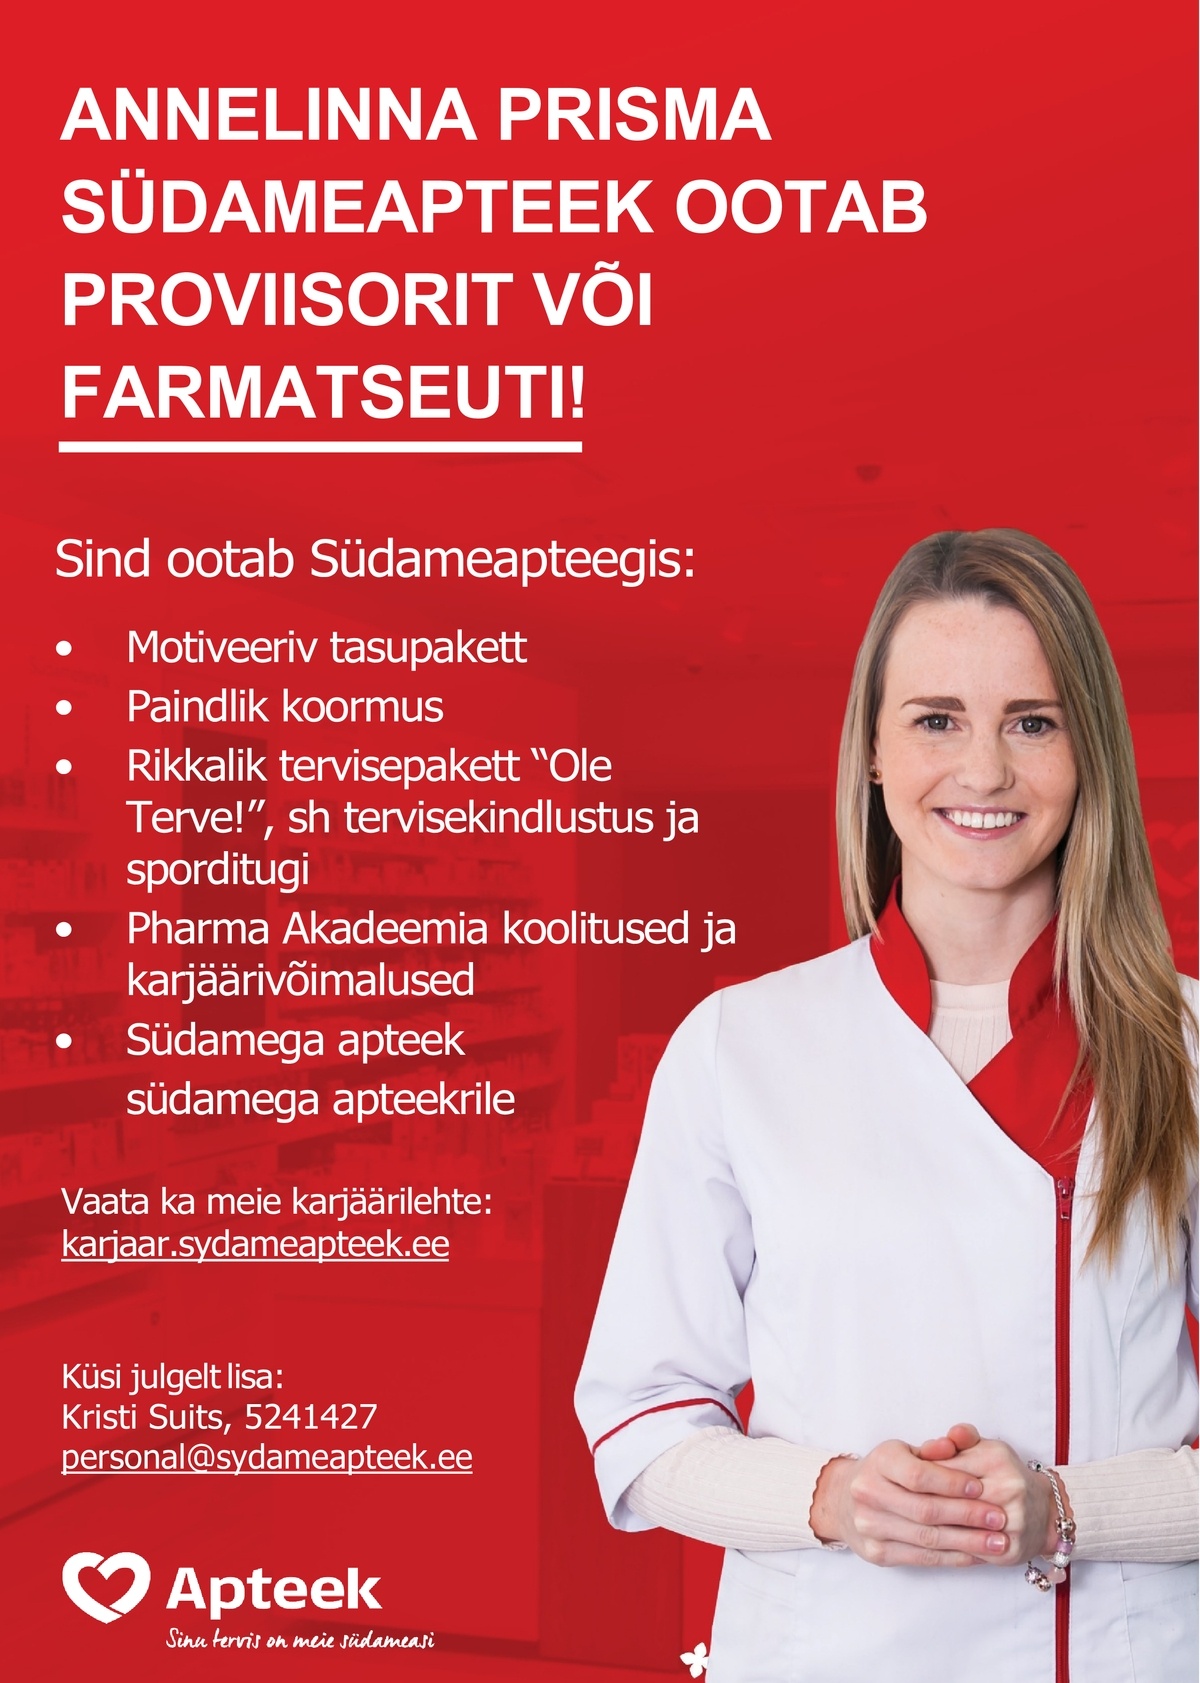 CV Keskus tööpakkumine Tartu Annelinna Prisma Südameapteek ootab tööle  proviisorit või farmatseuti!, 2021-06-07